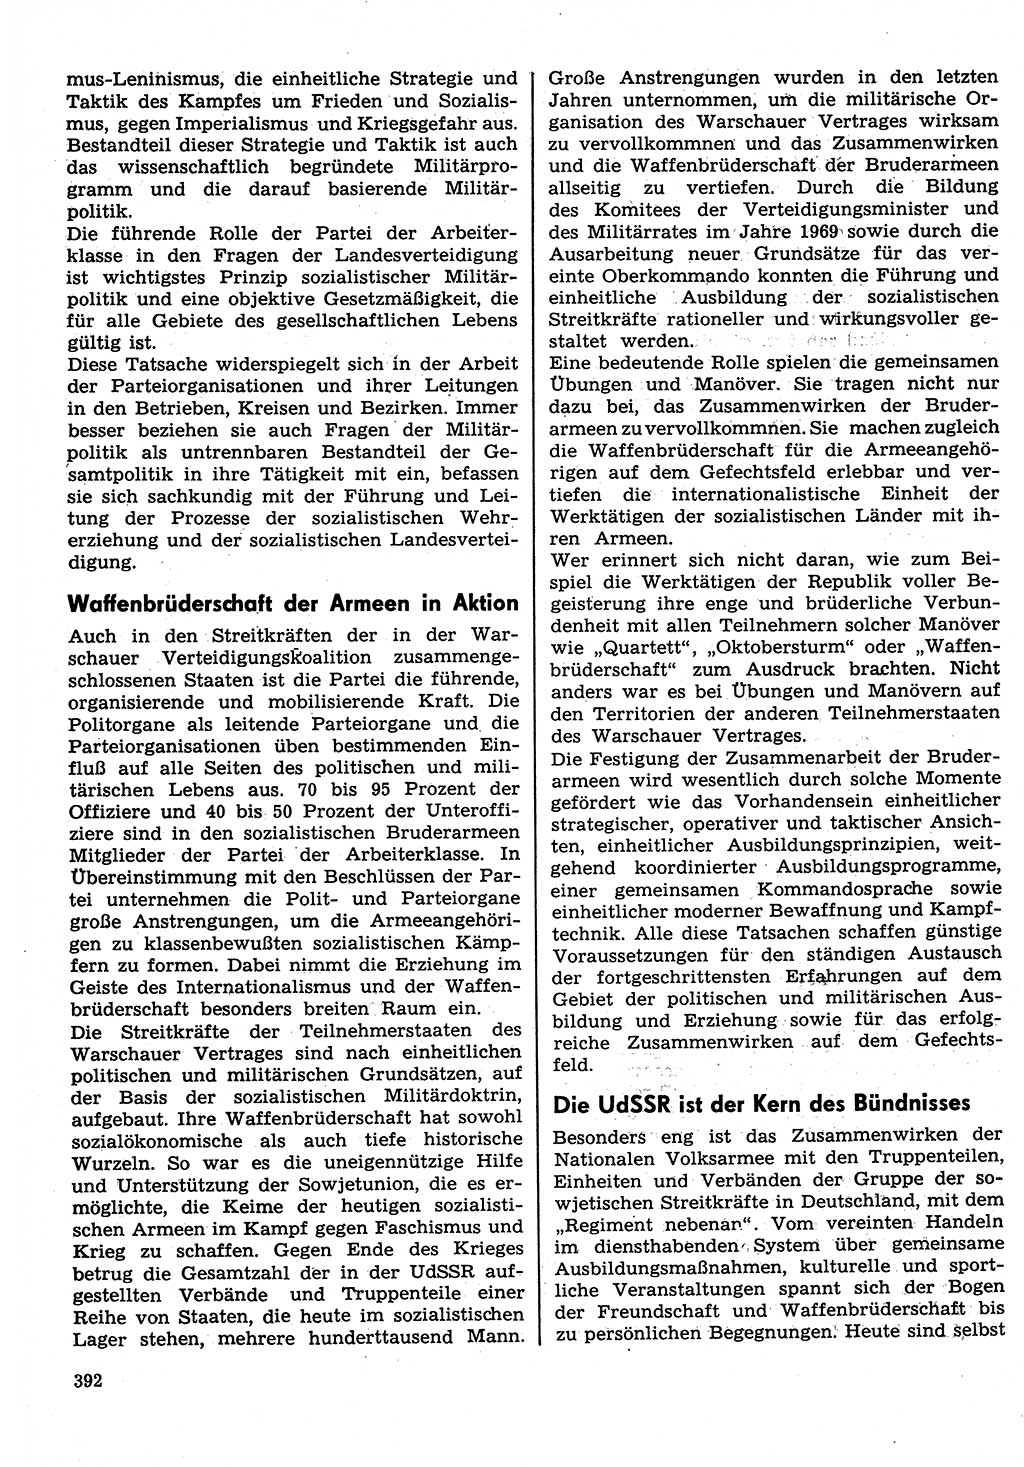 Neuer Weg (NW), Organ des Zentralkomitees (ZK) der SED (Sozialistische Einheitspartei Deutschlands) für Fragen des Parteilebens, 30. Jahrgang [Deutsche Demokratische Republik (DDR)] 1975, Seite 392 (NW ZK SED DDR 1975, S. 392)